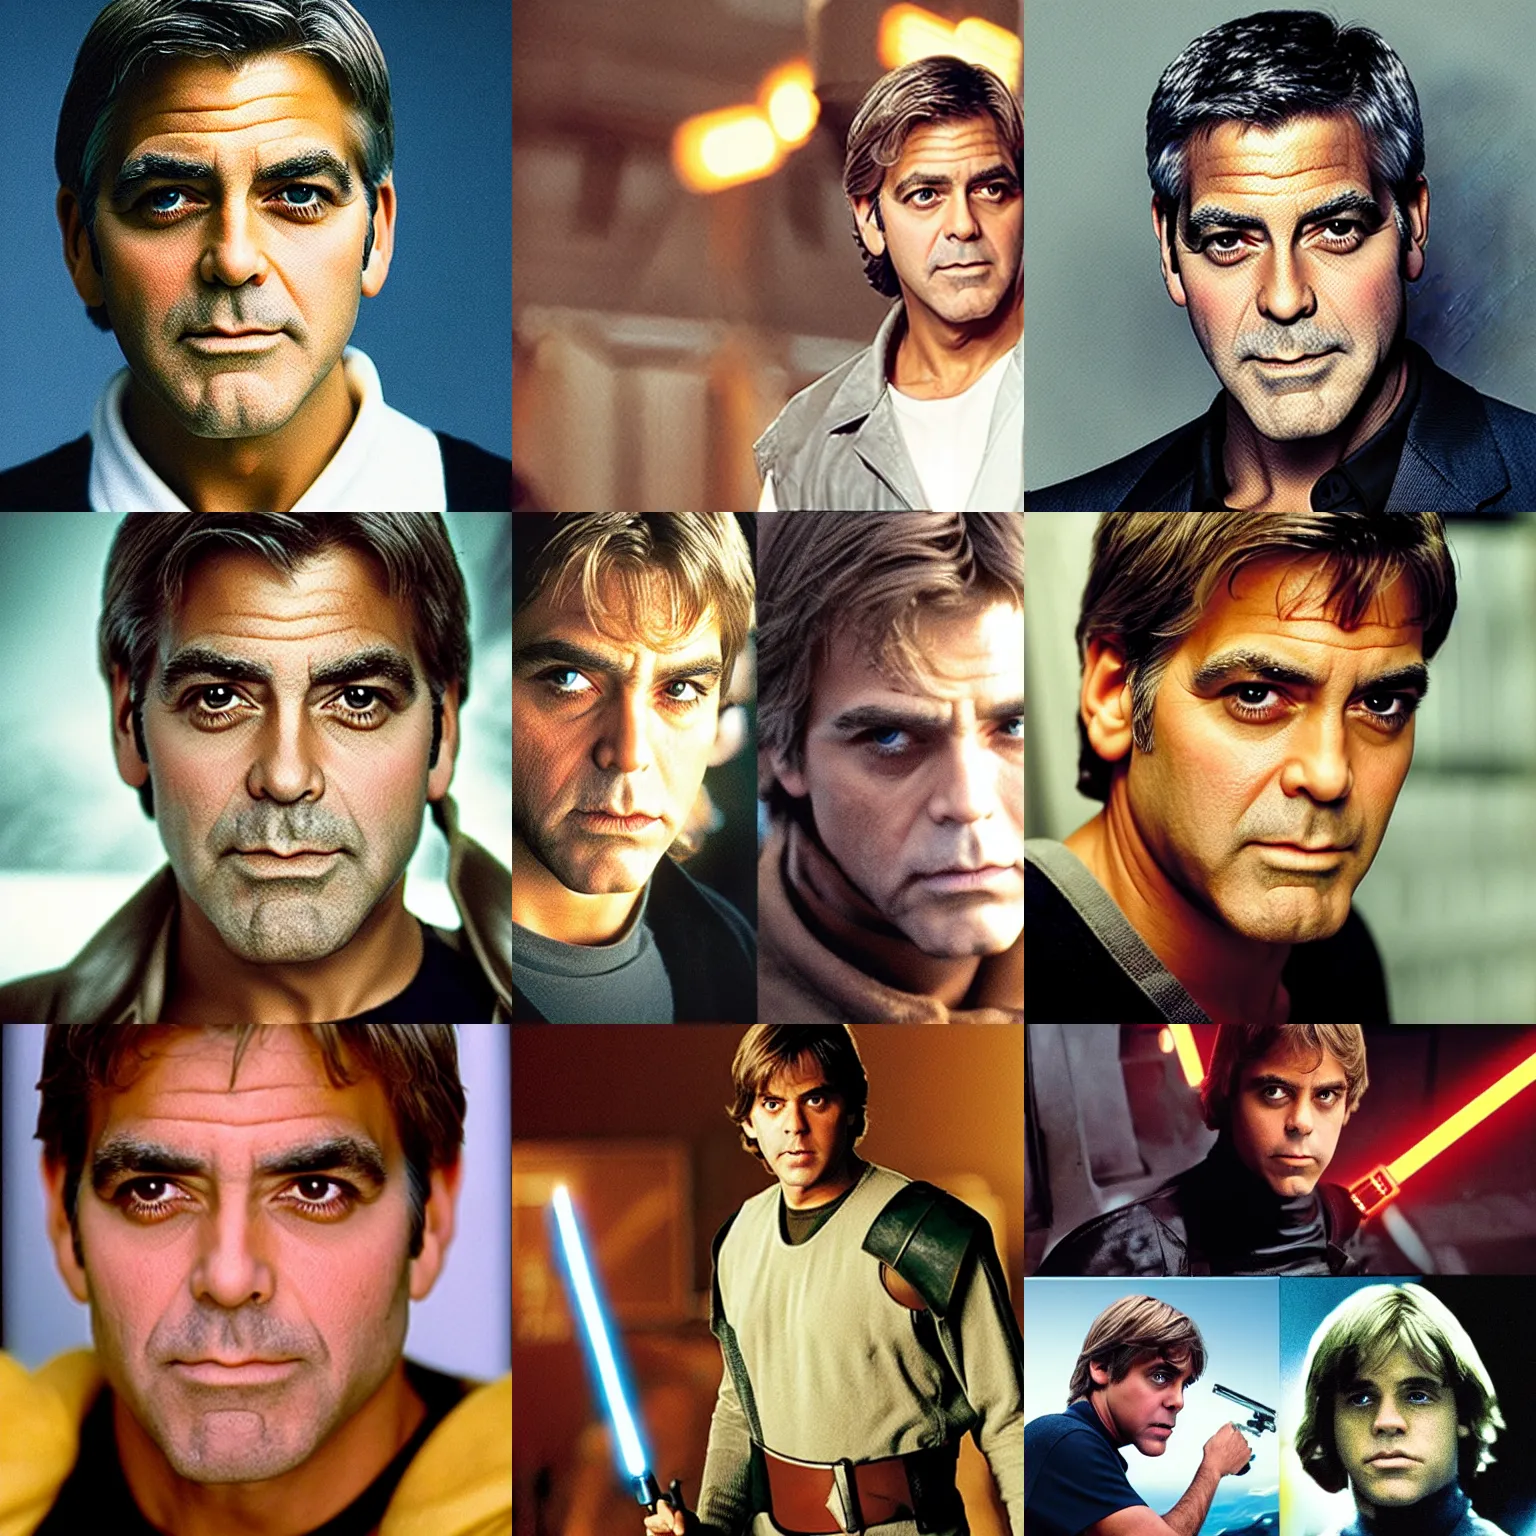 Prompt: George Clooney as Luke Skywalker